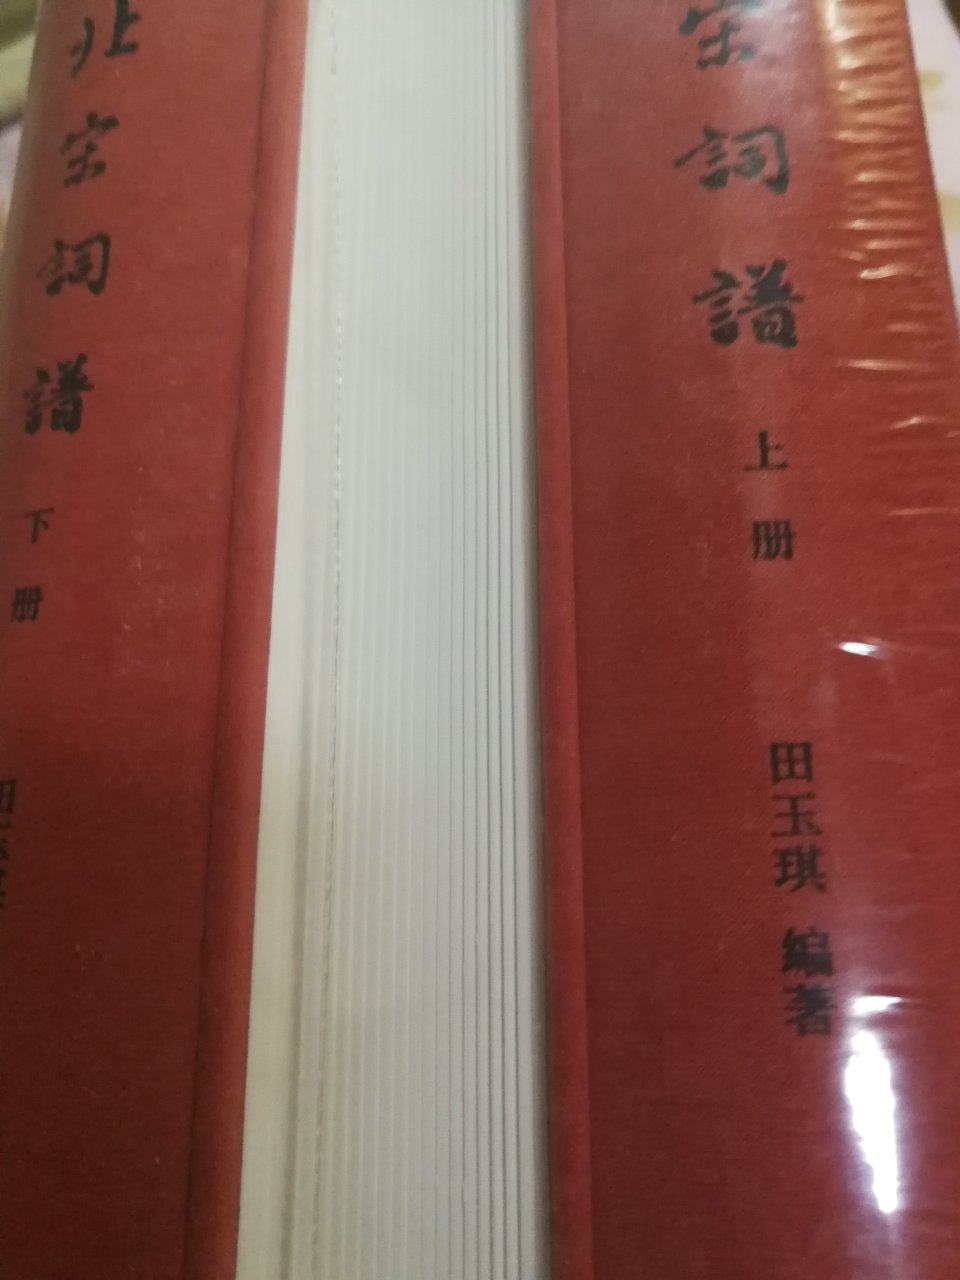 中华书局今年出版的一部好书,布面精装,纸张好！内容是学习了解宋词.